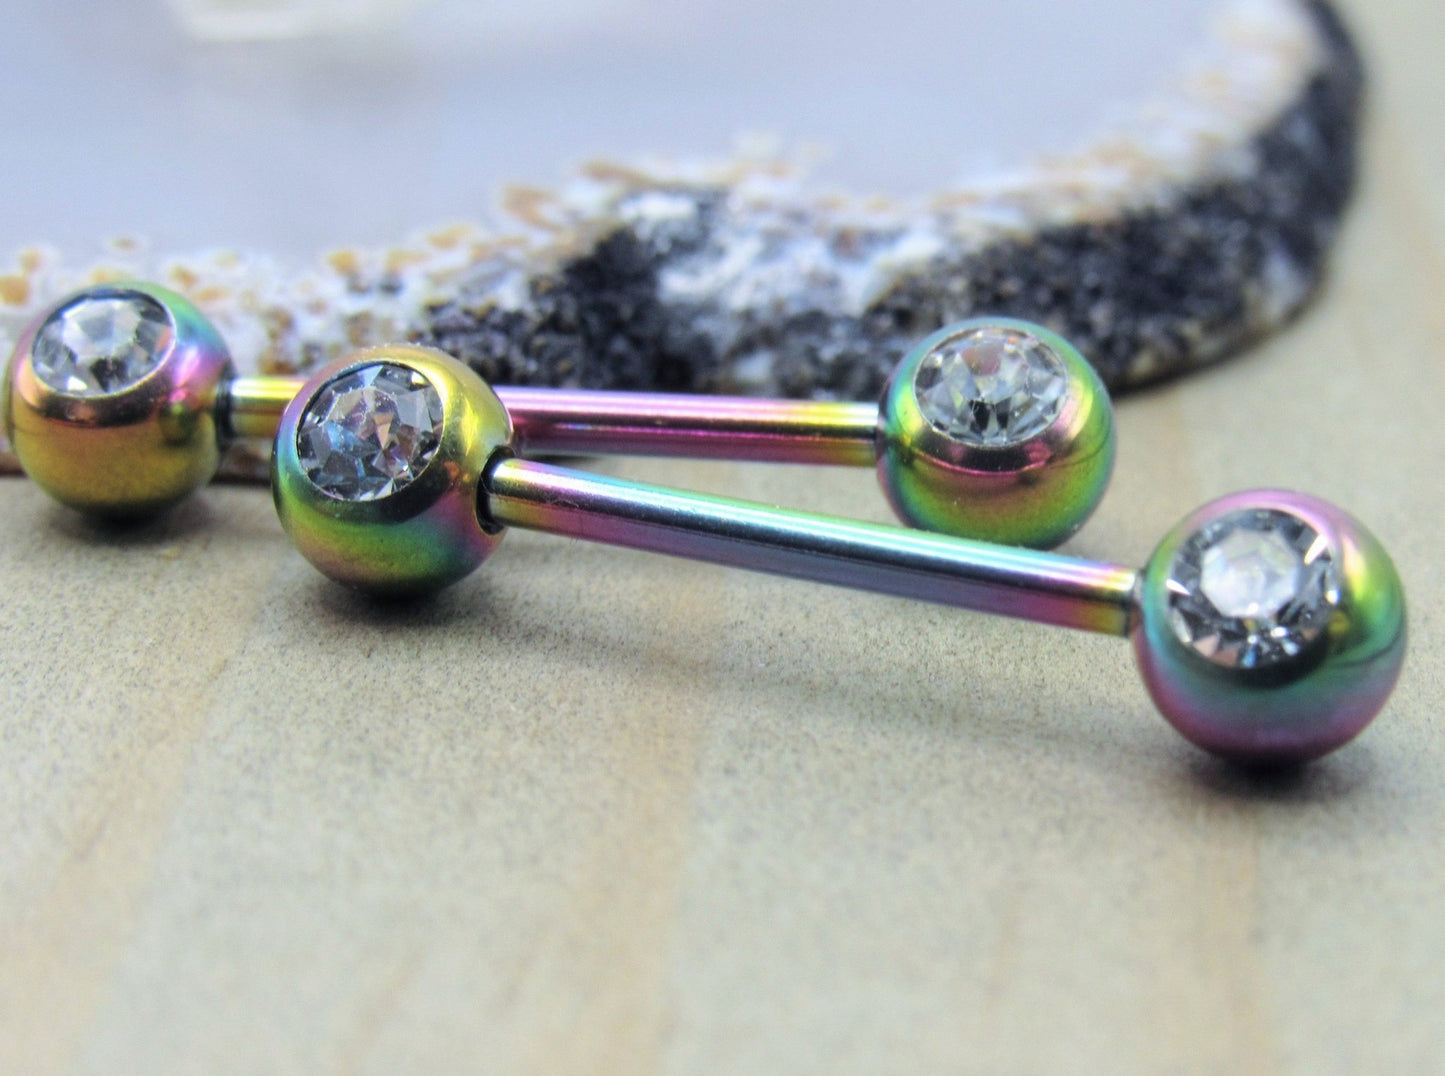 Rainbow nipple piercing barbell set 14g 5/8" 4mm cz forward facing crystal clear gemstones - Siren Body Jewelry